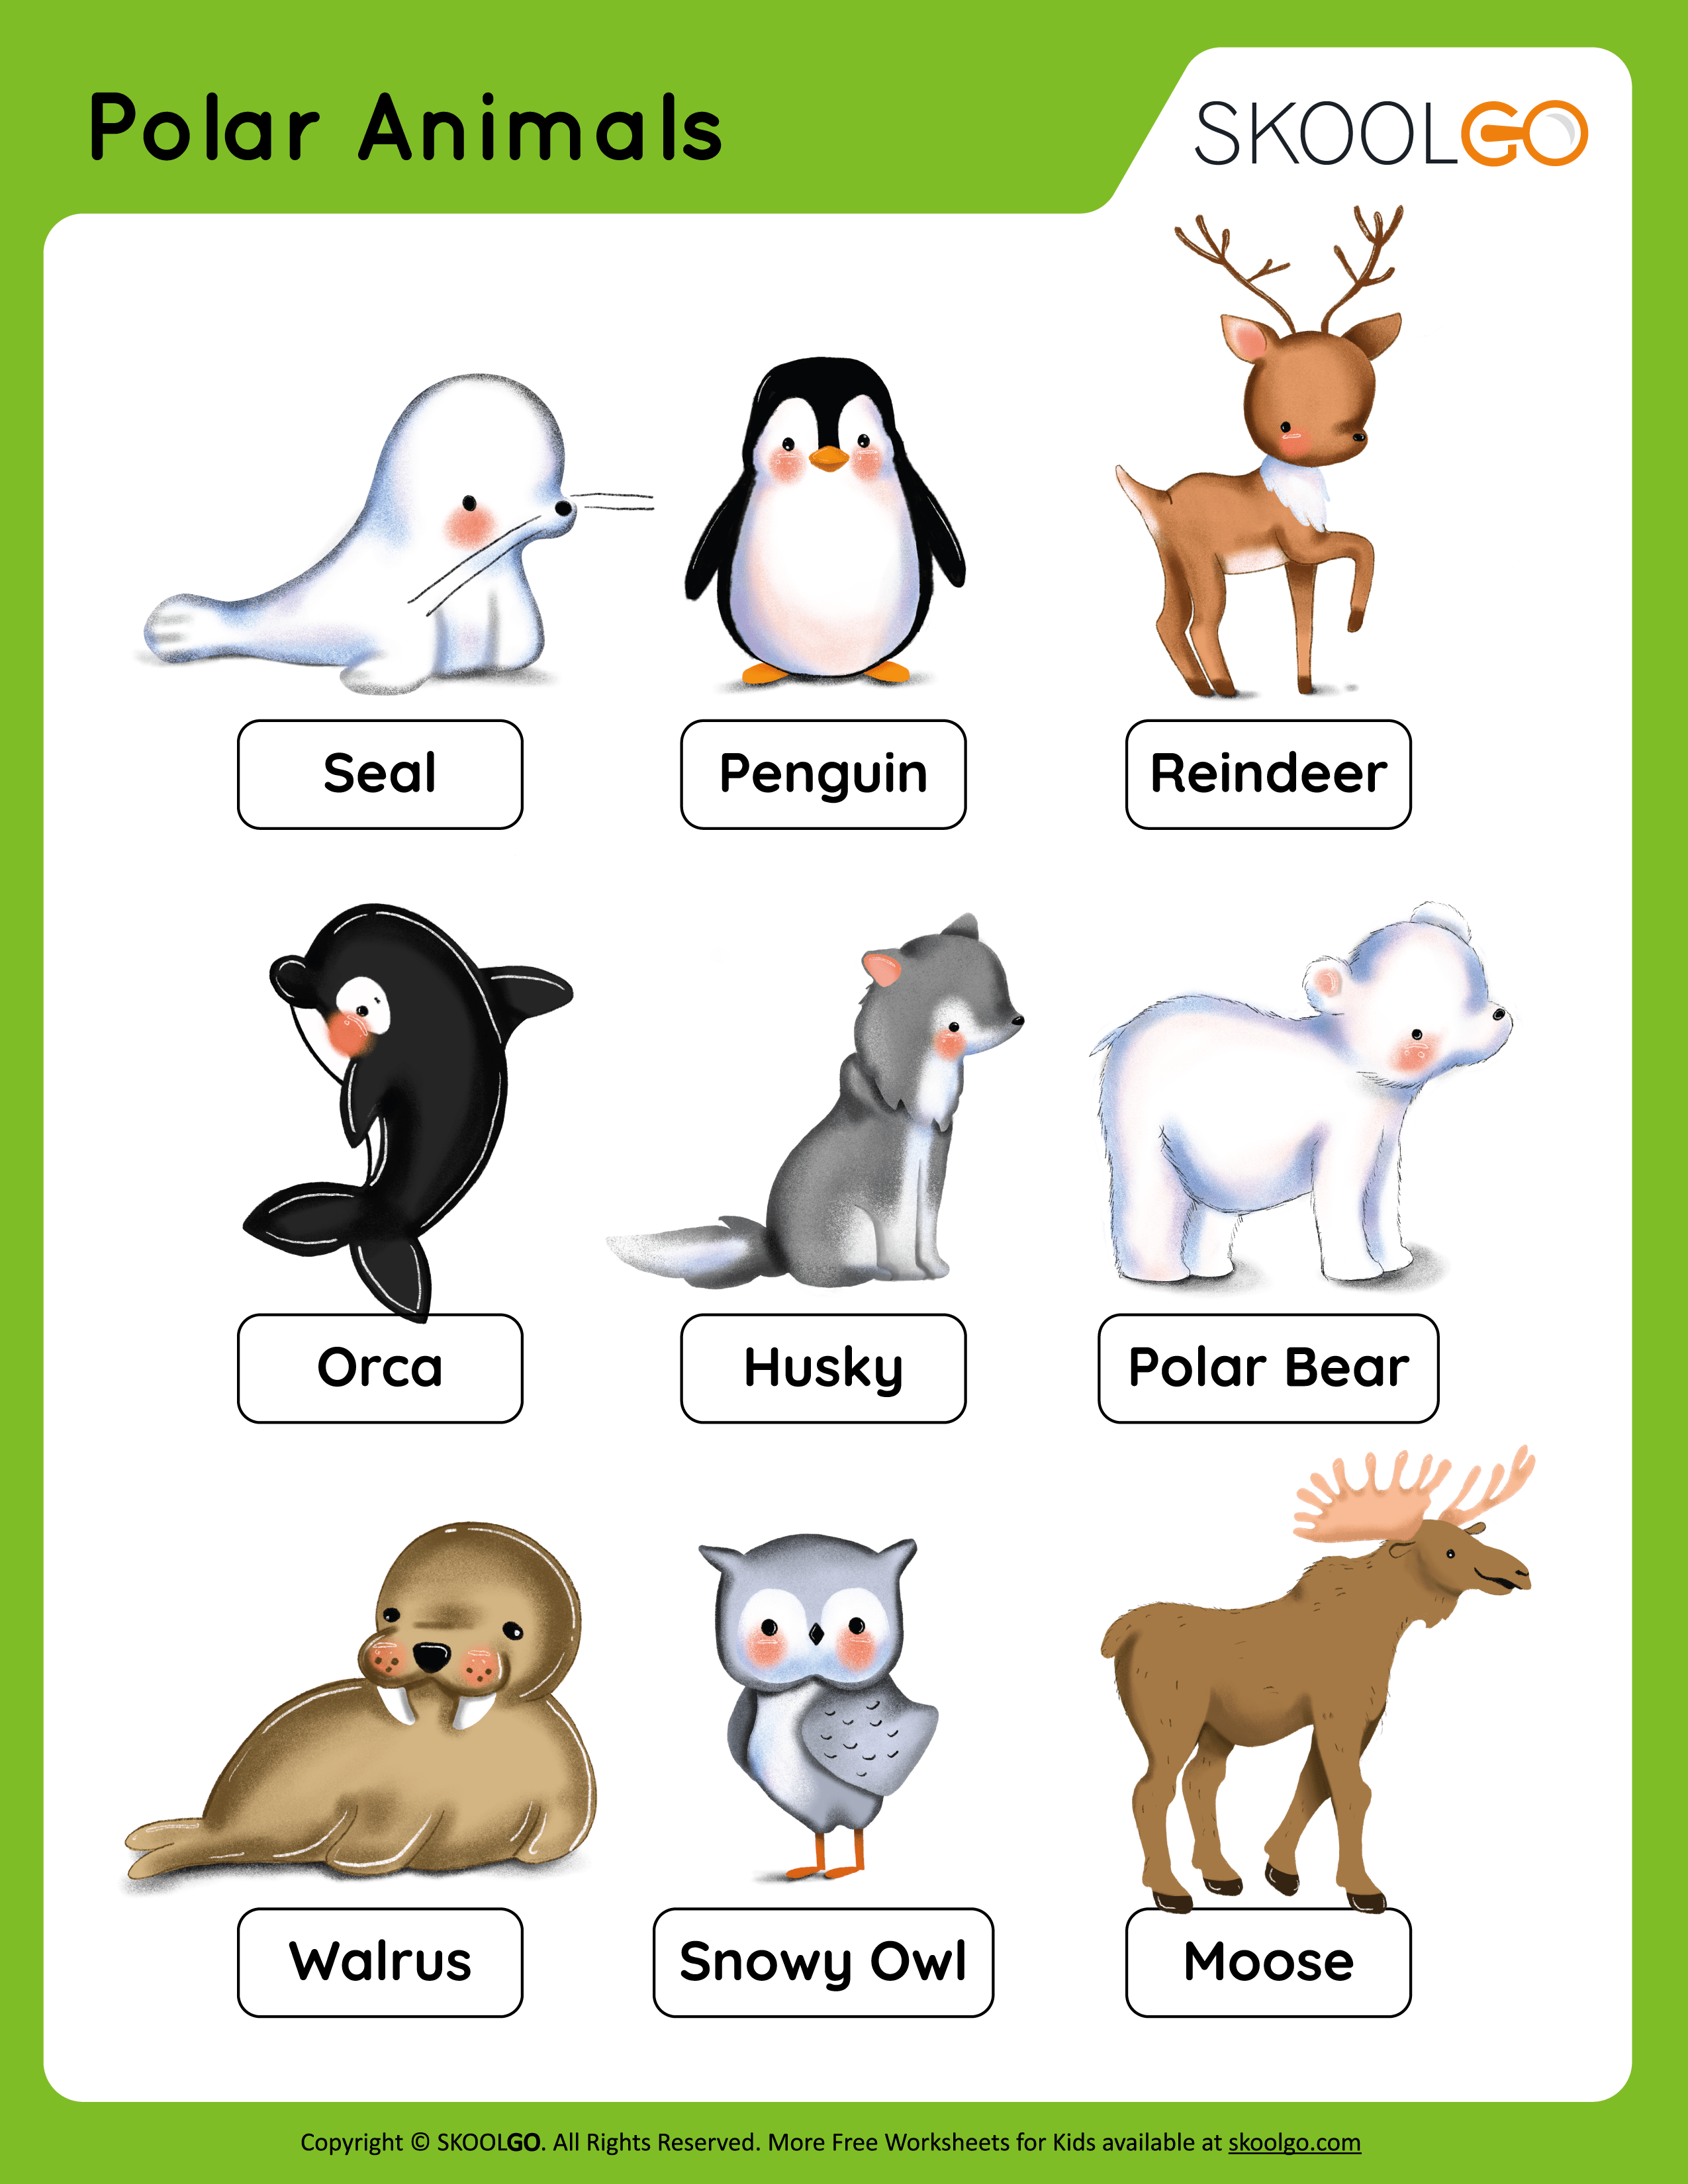 Polar Animals - Free Worksheet for Kids